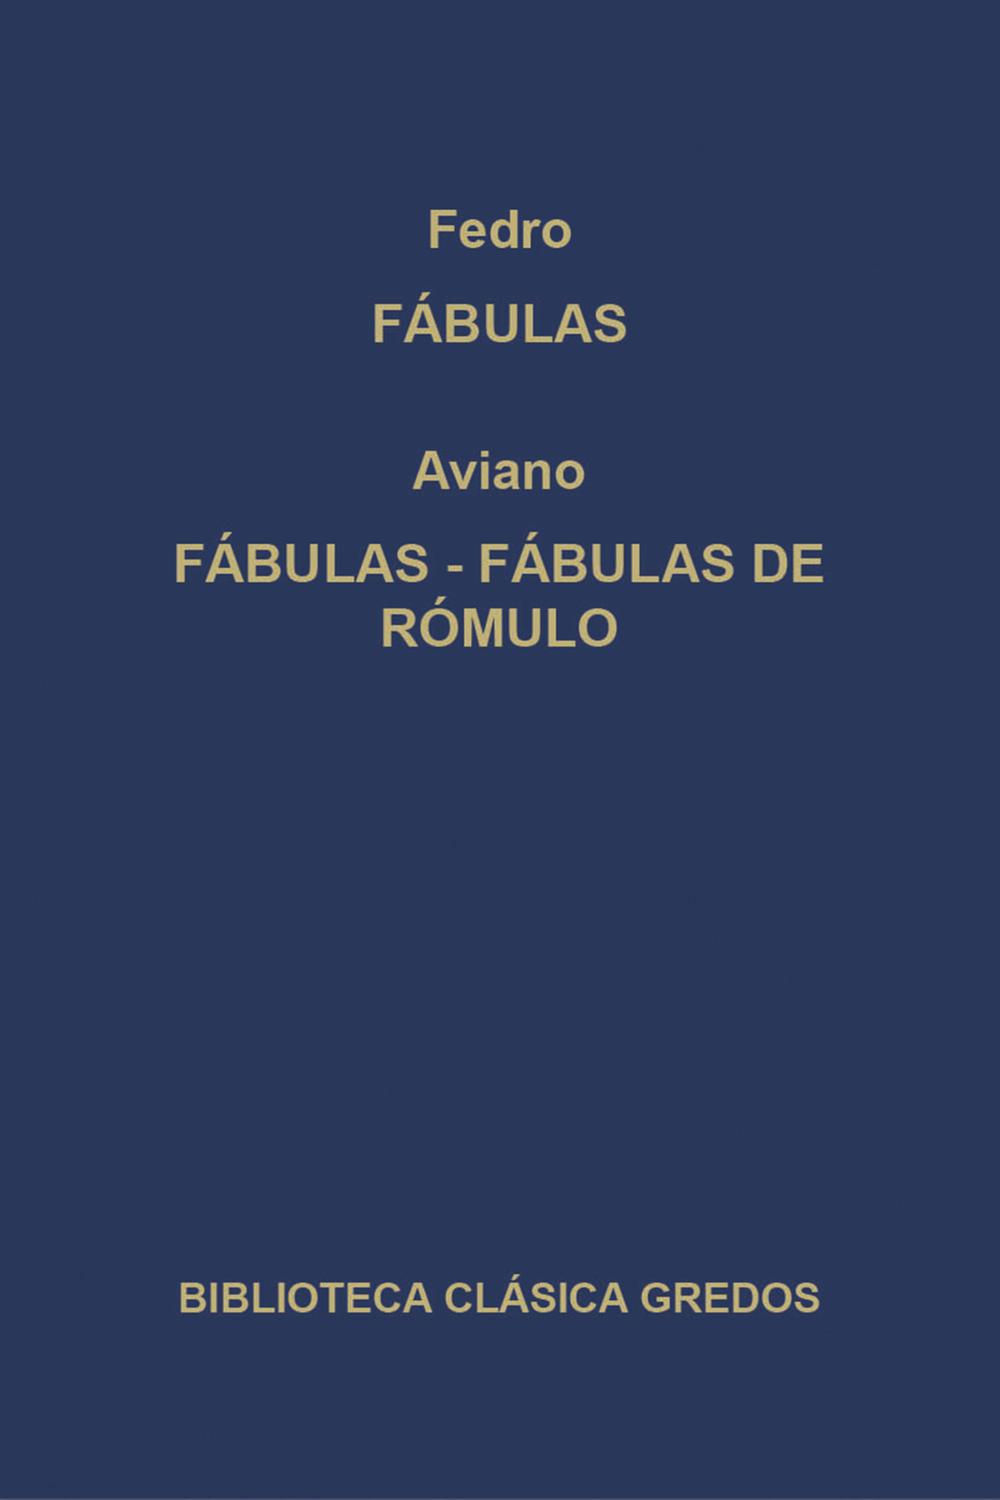 Fábulas. Fábulas. Fábulas de Rómulo. - Fedro, Aviano, Antonio Cascón Dorado, Eustaquio Sánchez Salor